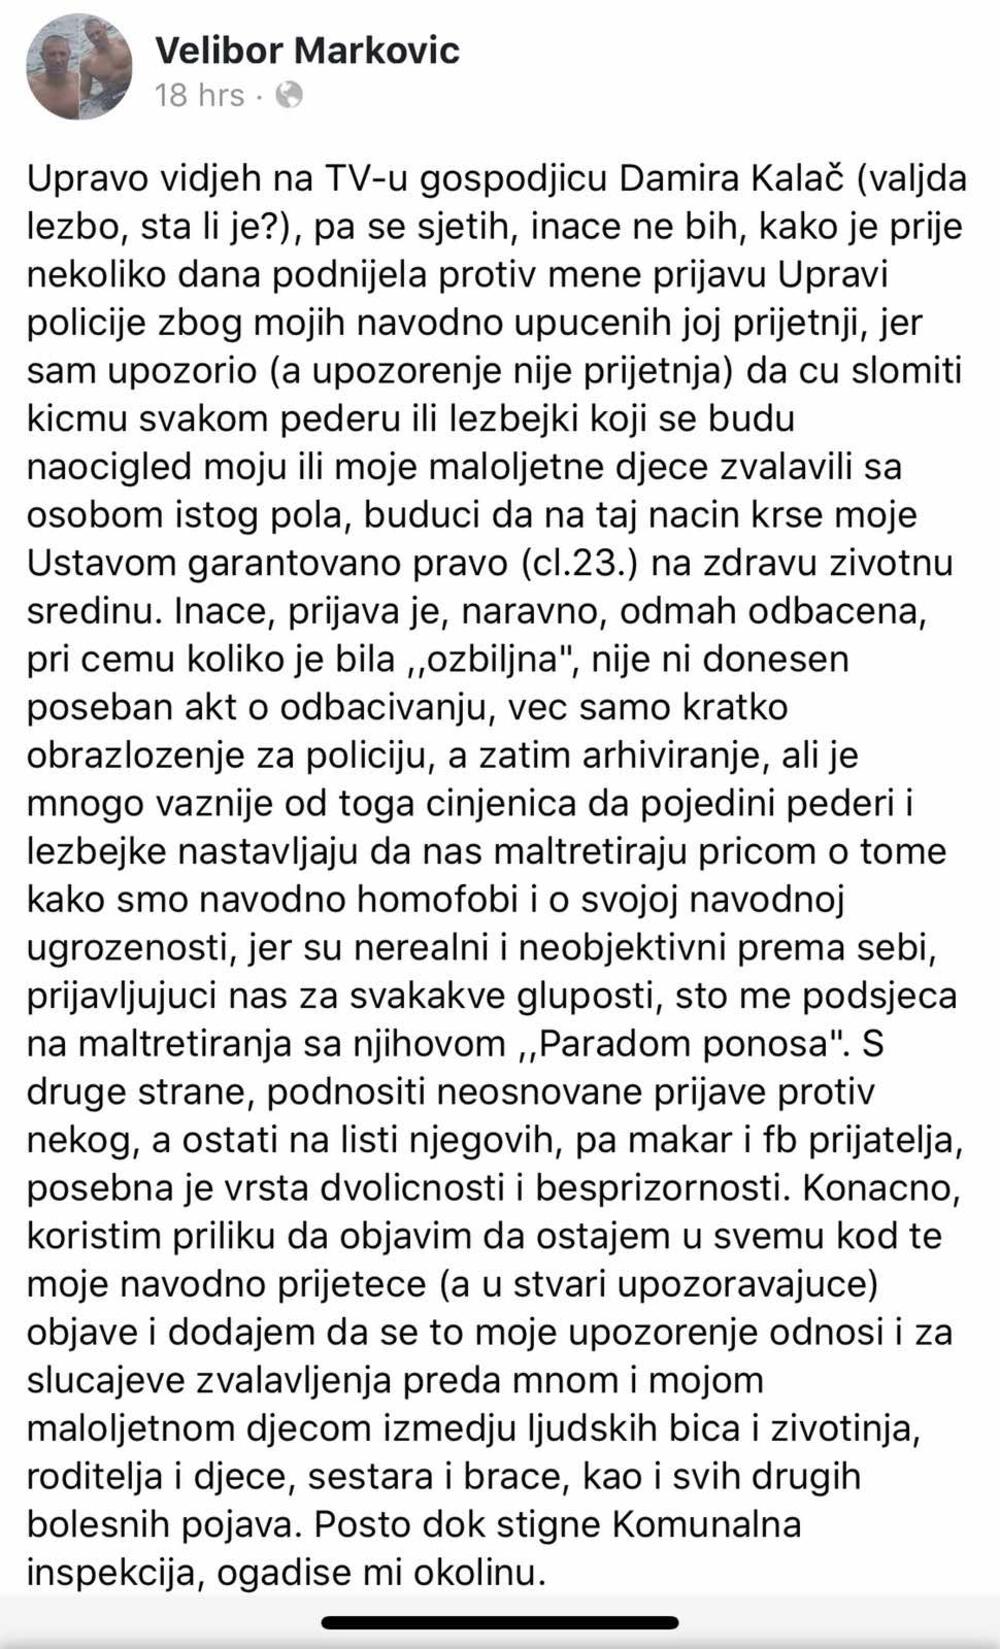 Komentar Markovića na Fejsbuku